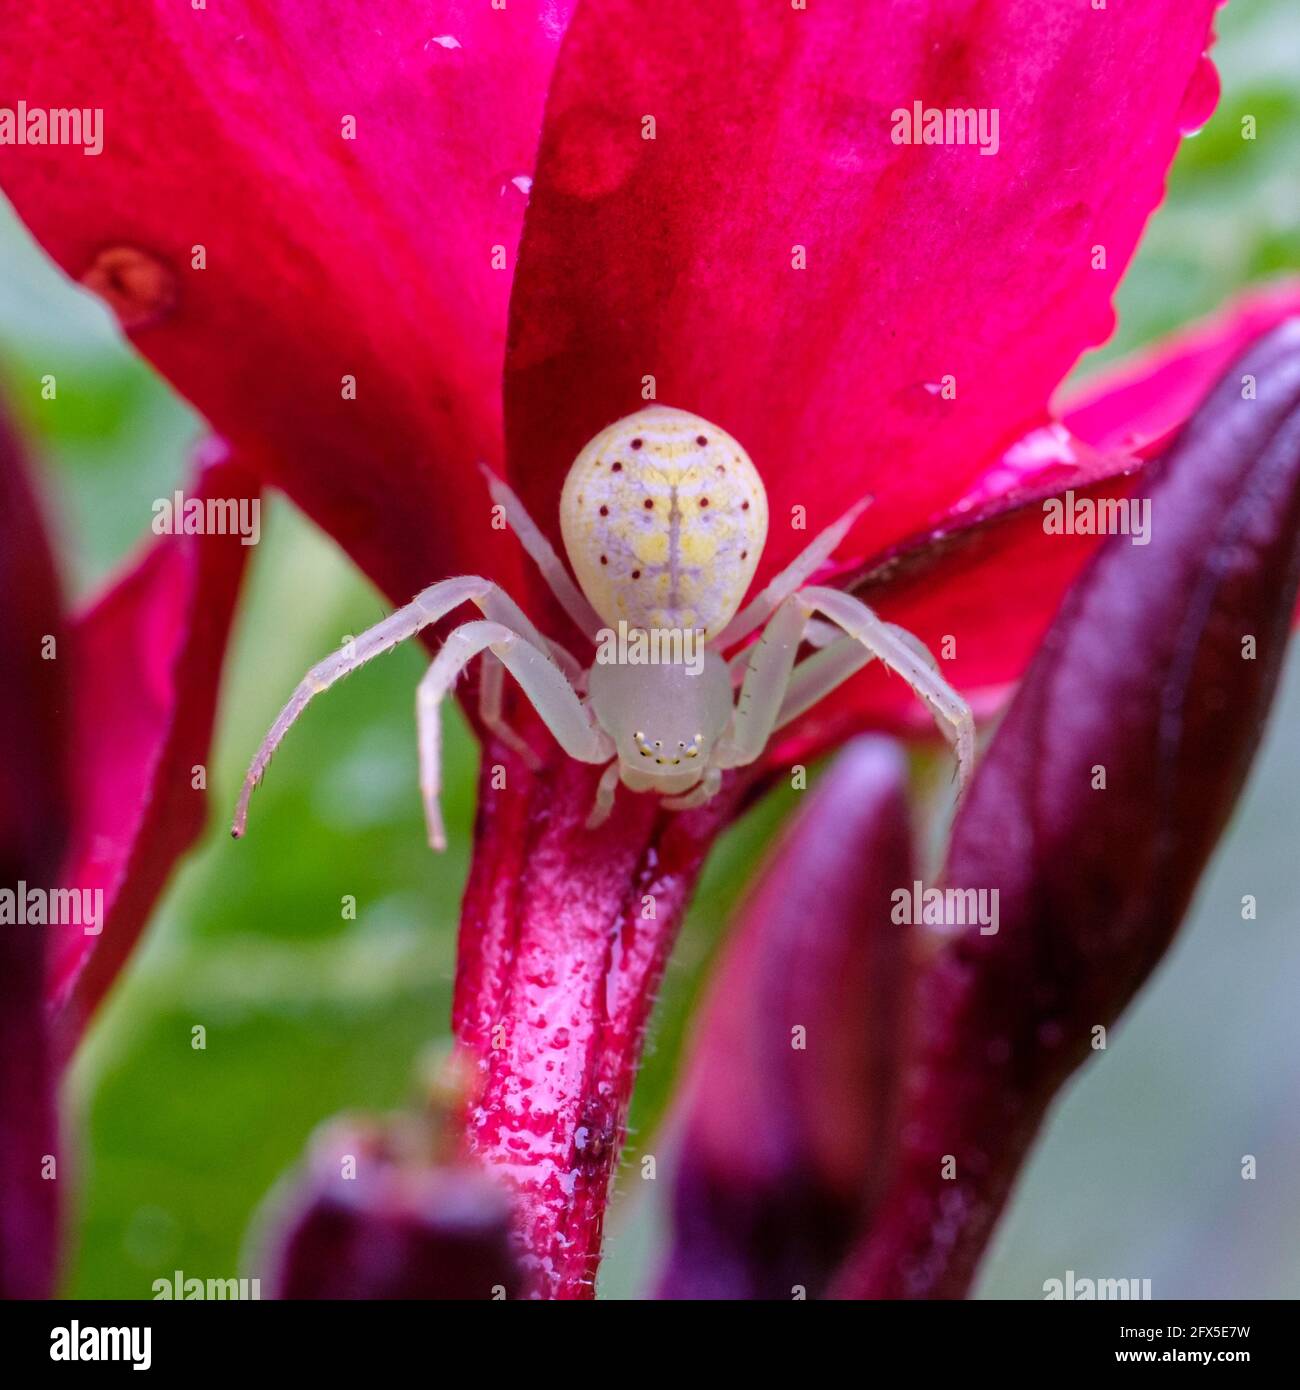 Spider in our garden Stock Photo